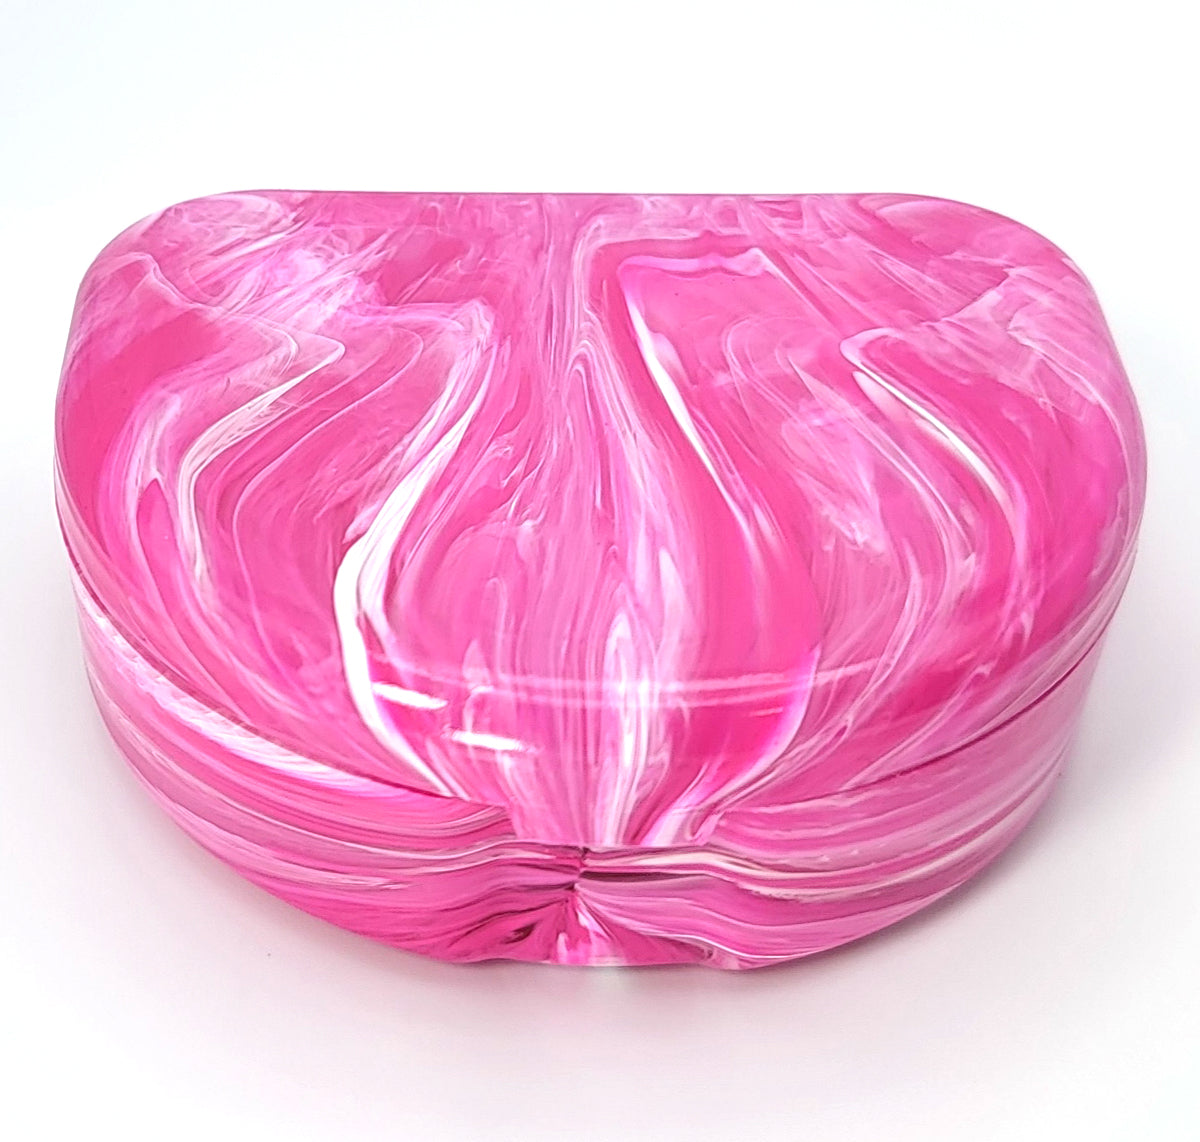 Retainer Case - Color Splash Collection - Pink Bubblegum